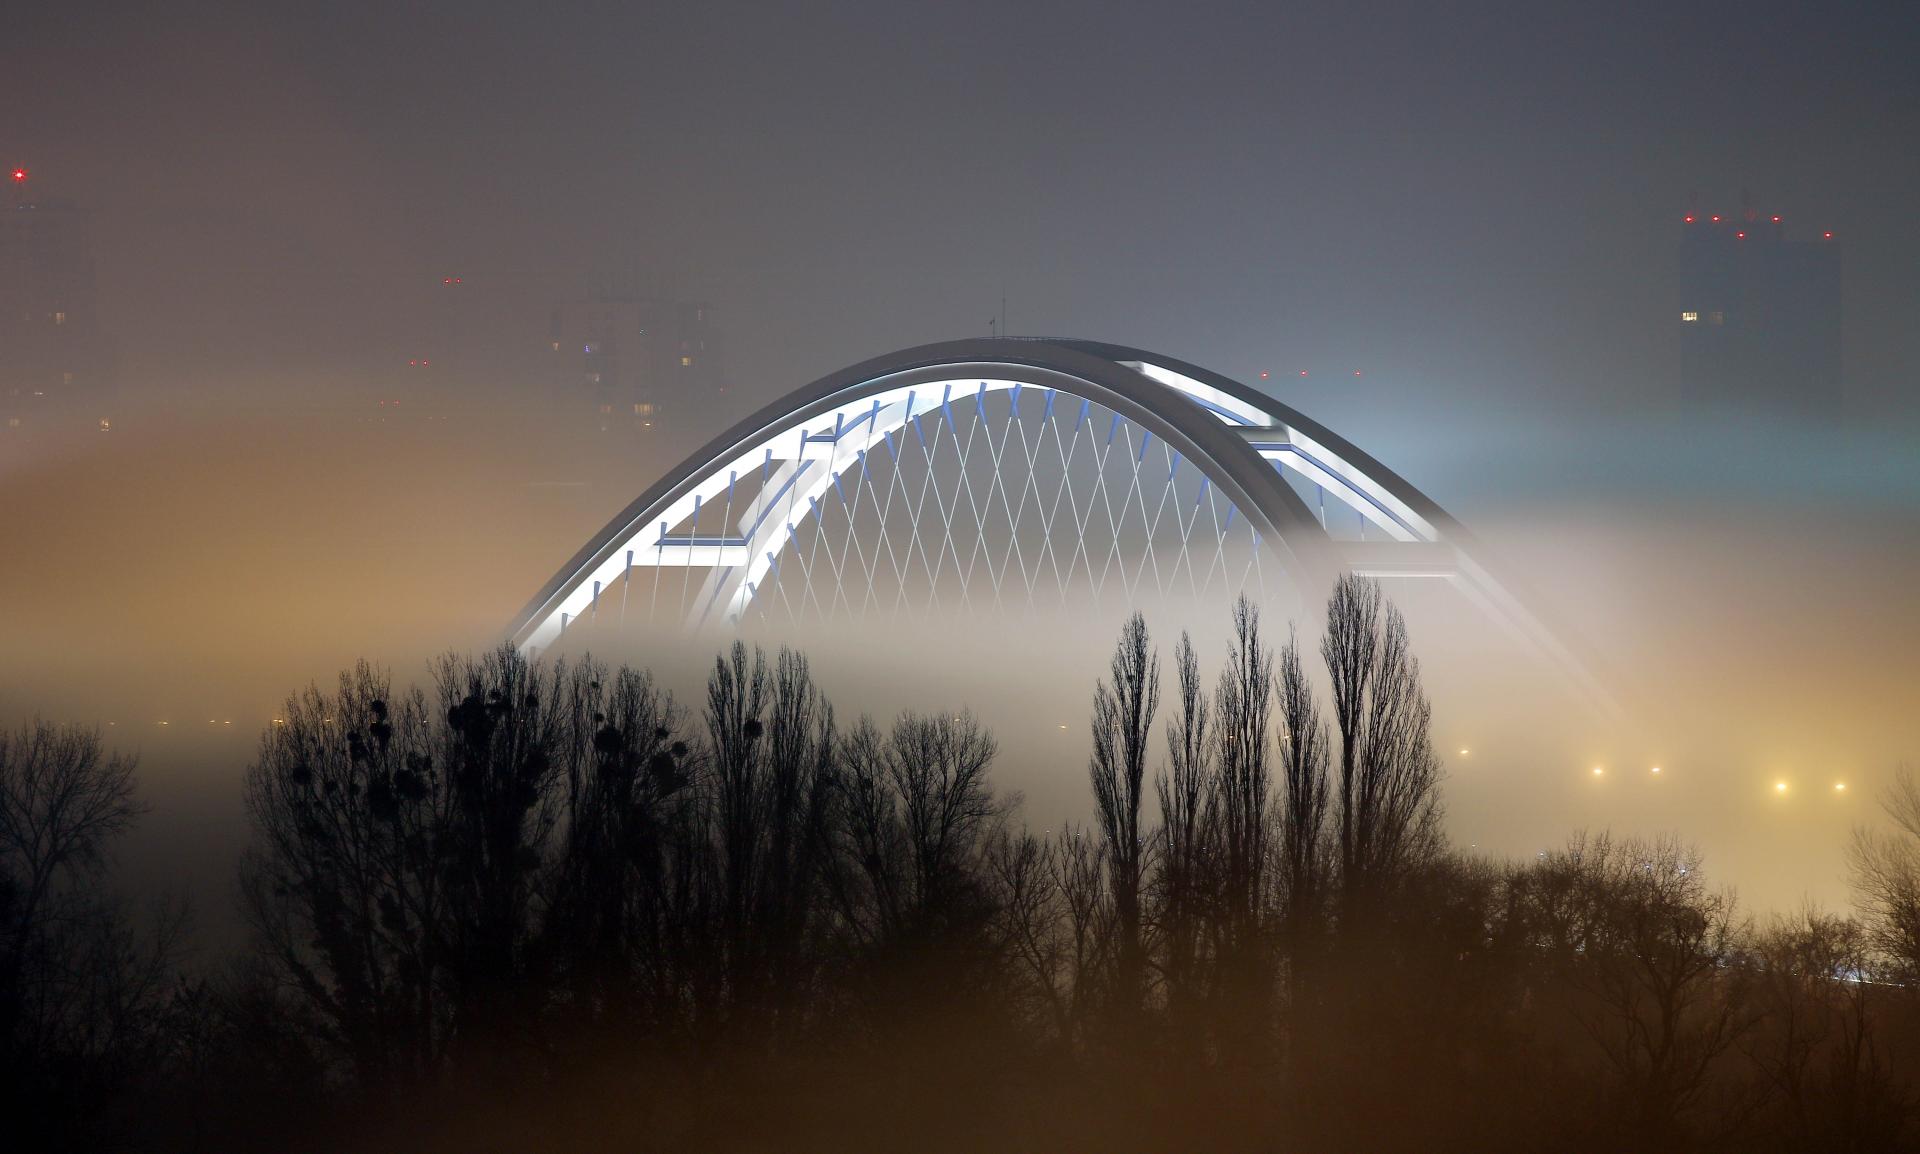 Krachuje firma, ktorá kreslila Most Apollo a obchvat v Prešove. Nechali ju vykrvácať, vraví expert